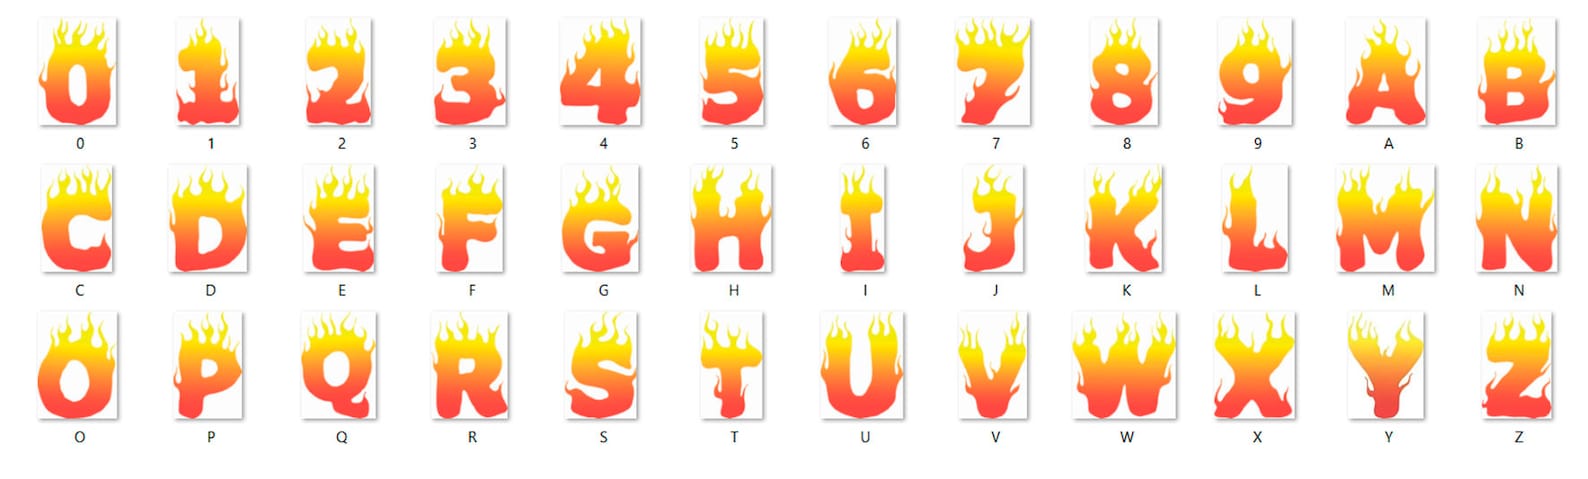 Flame Font Svg Fire Font Svg Thrasher Font Svg Skateboard - Etsy Finland